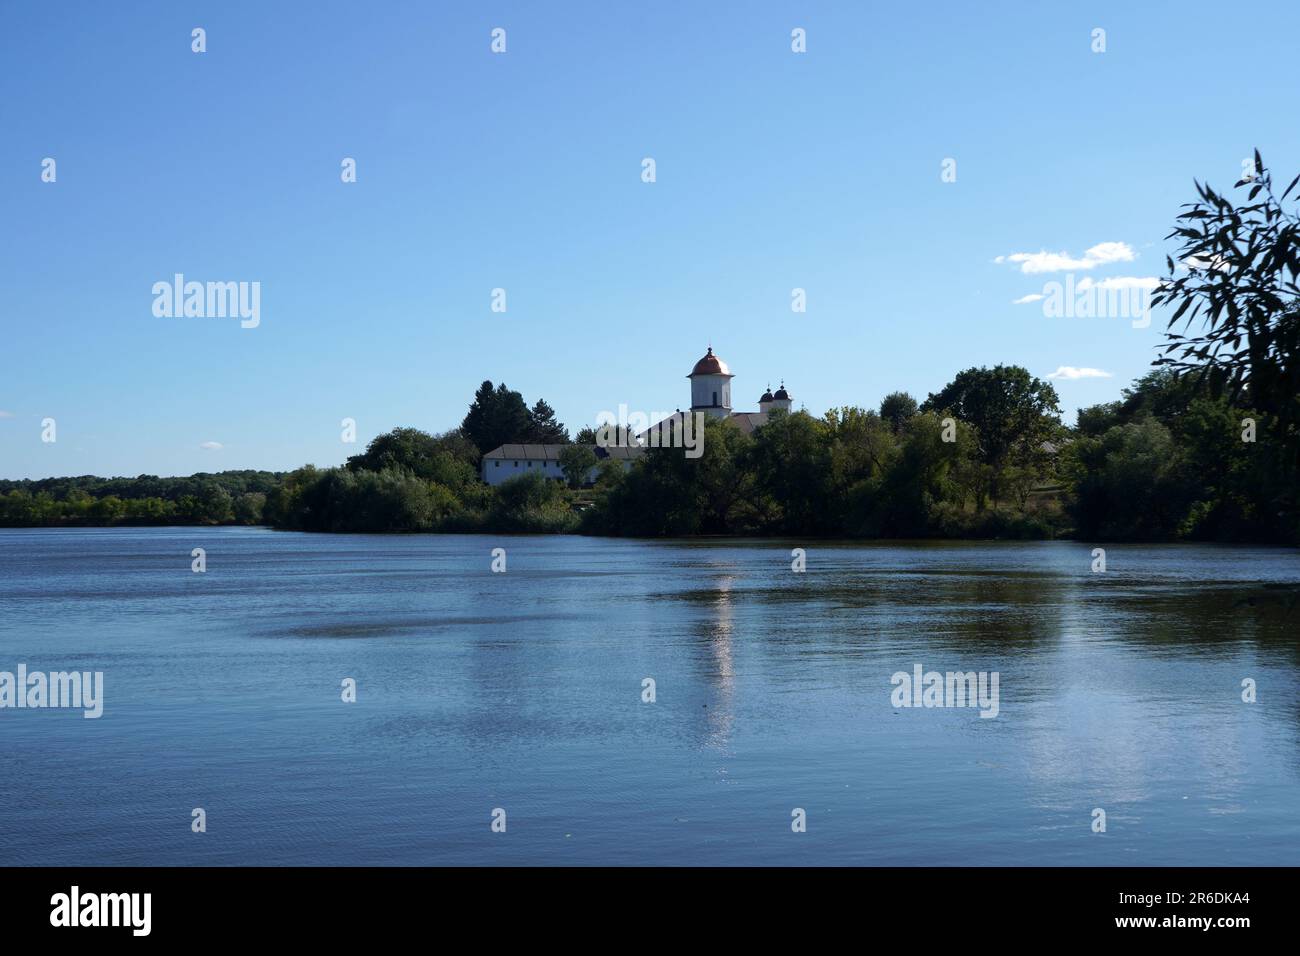 Monastère de Cernica sur la rive du lac Cernica, dans les environs de Bucarest, Roumanie Banque D'Images